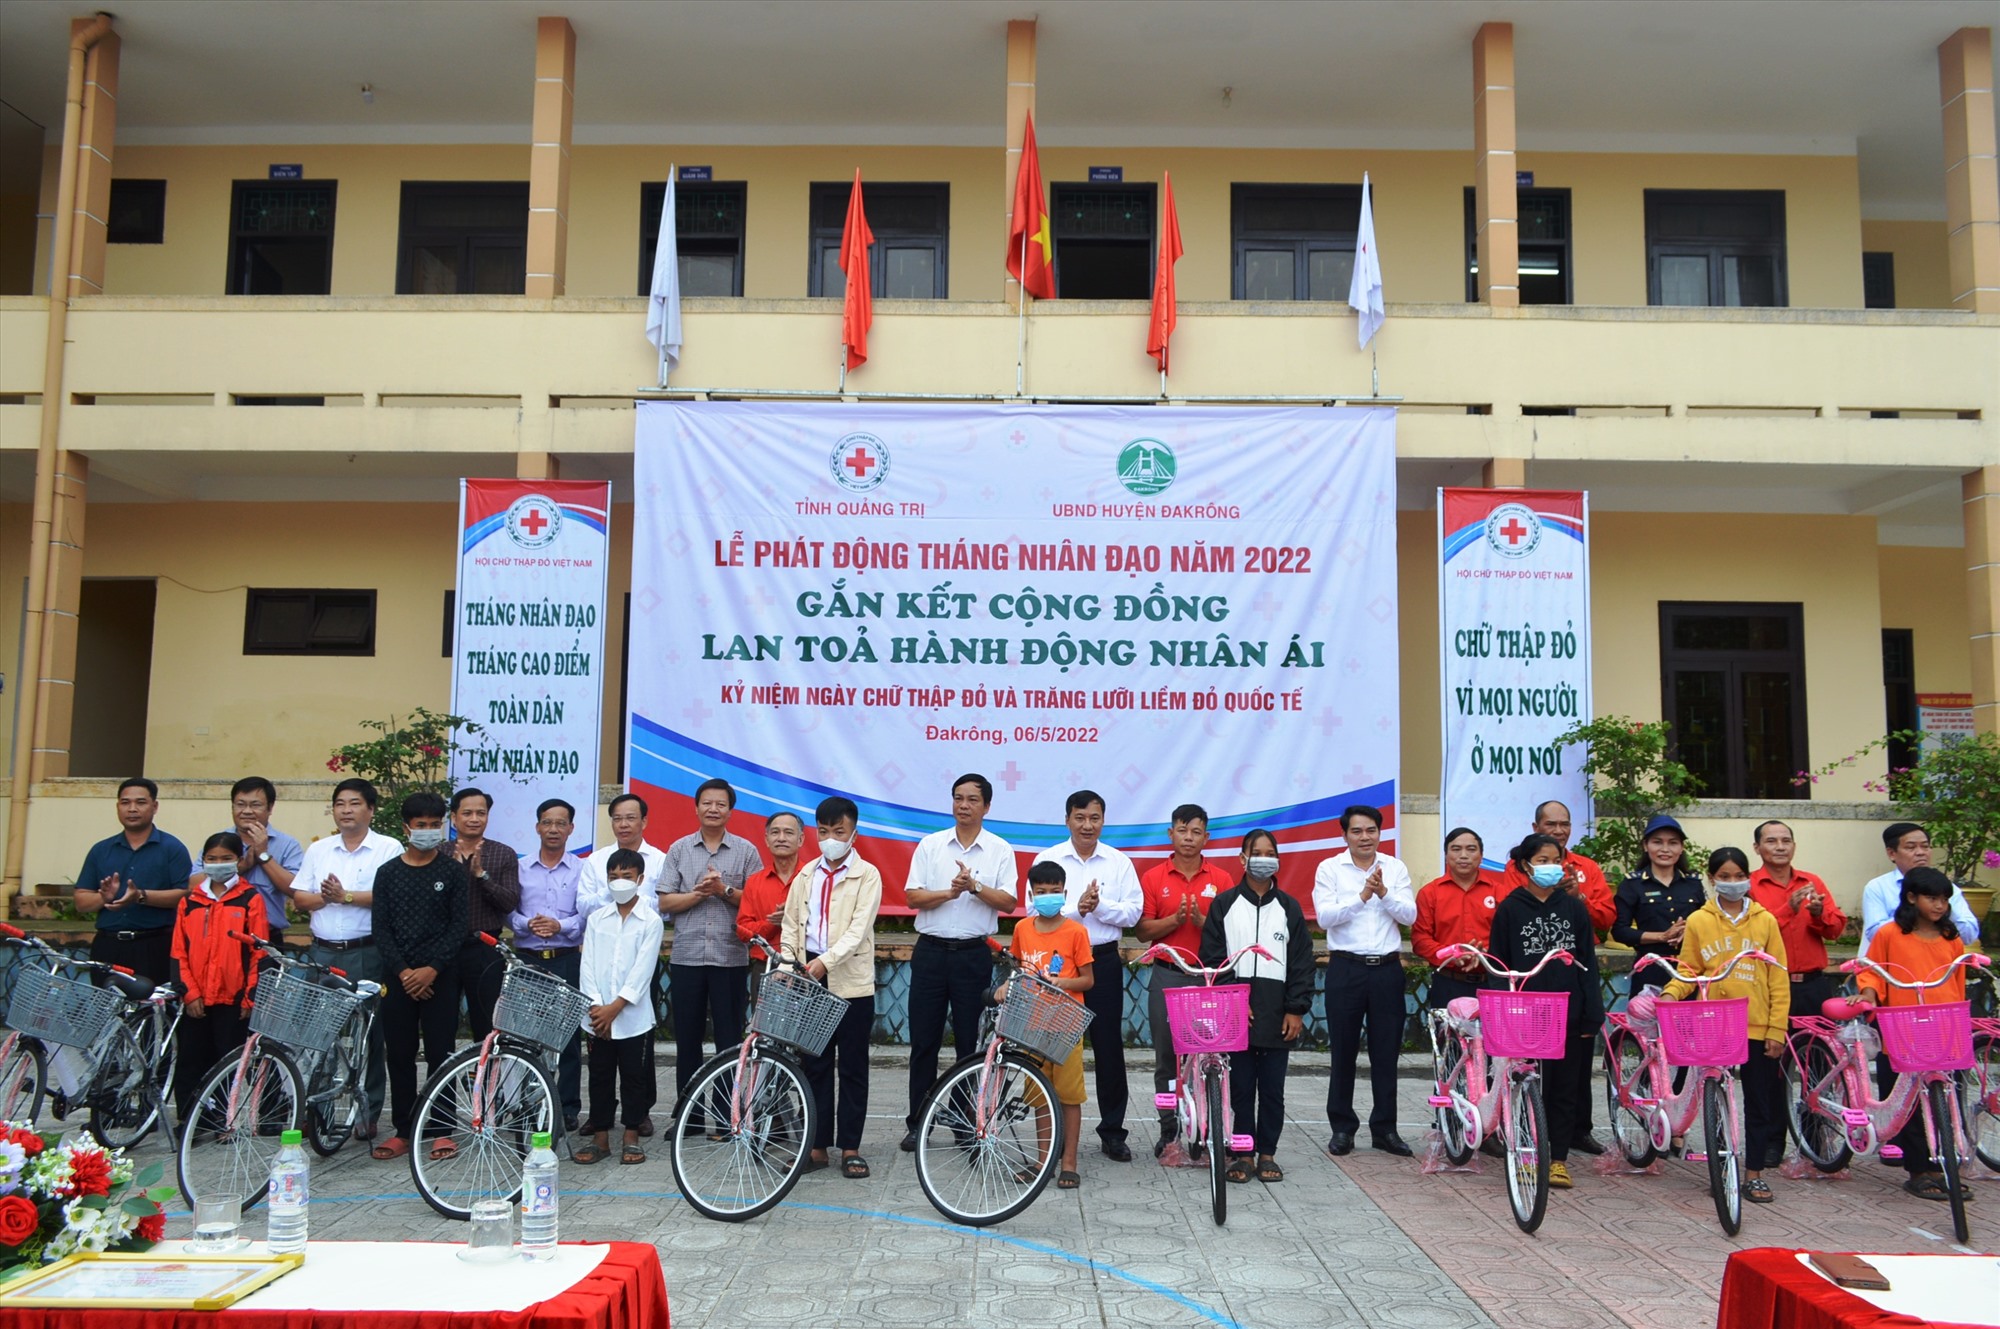 Trao tặng xe đạp cho học sinh nghèo vượt khó huyện Đakrông tại lễ phát động “Tháng Nhân đạo” năm 2022 - Ảnh: Đ.V